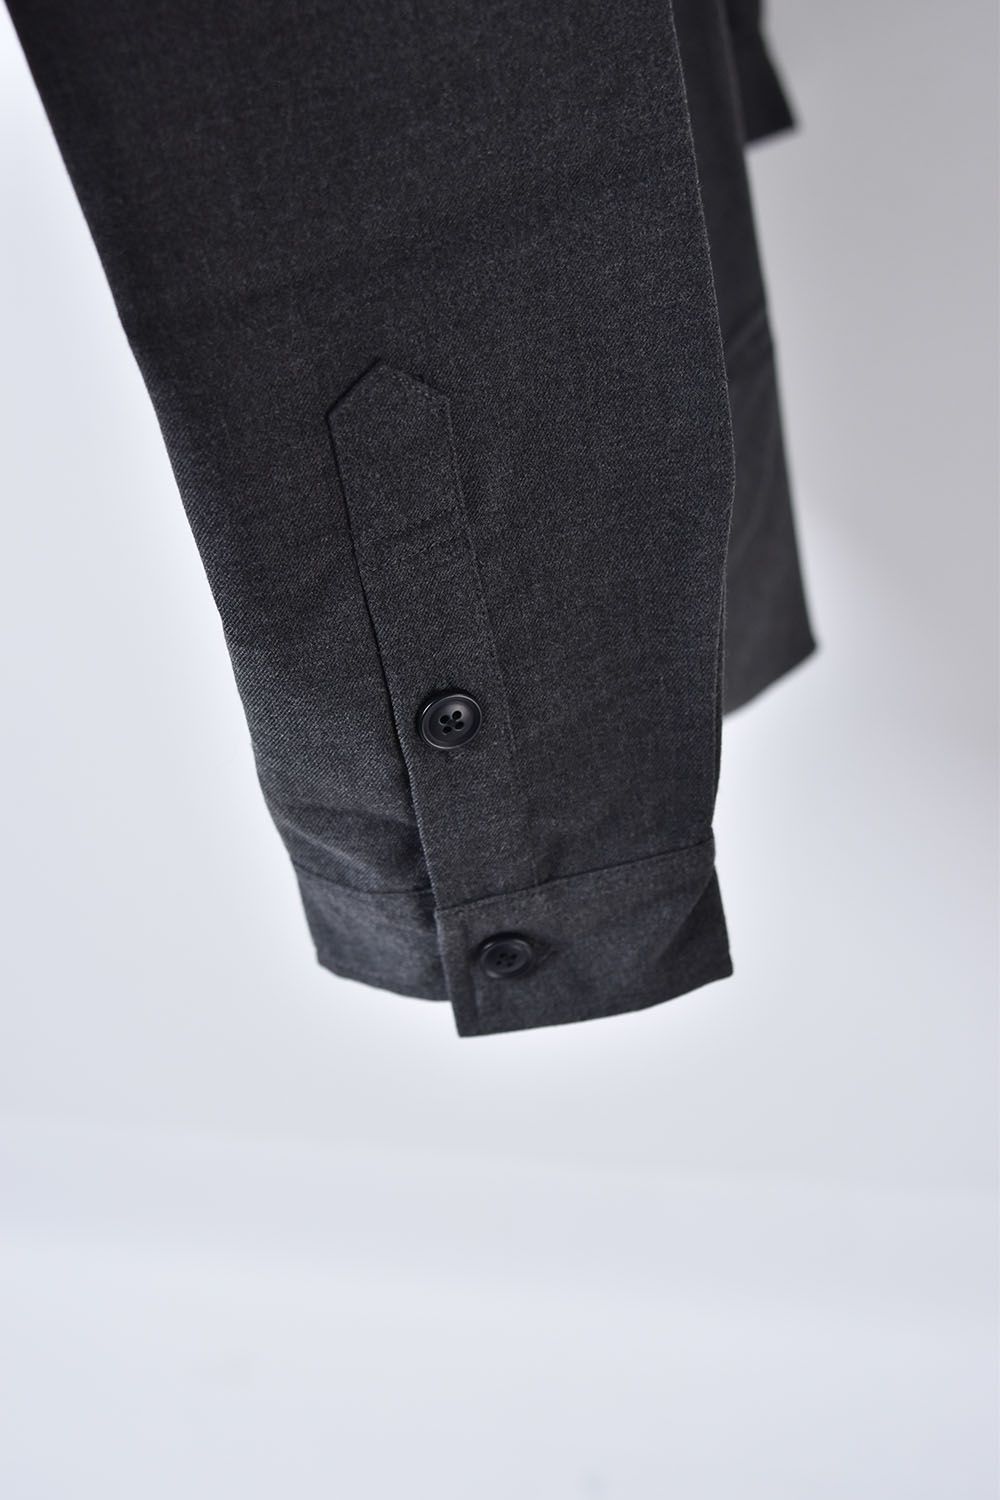 Rayon-Polyester Overfitting Shirt"Grey"/レーヨン,ポリエステルオーバーフィッティングシャツ"グレー"